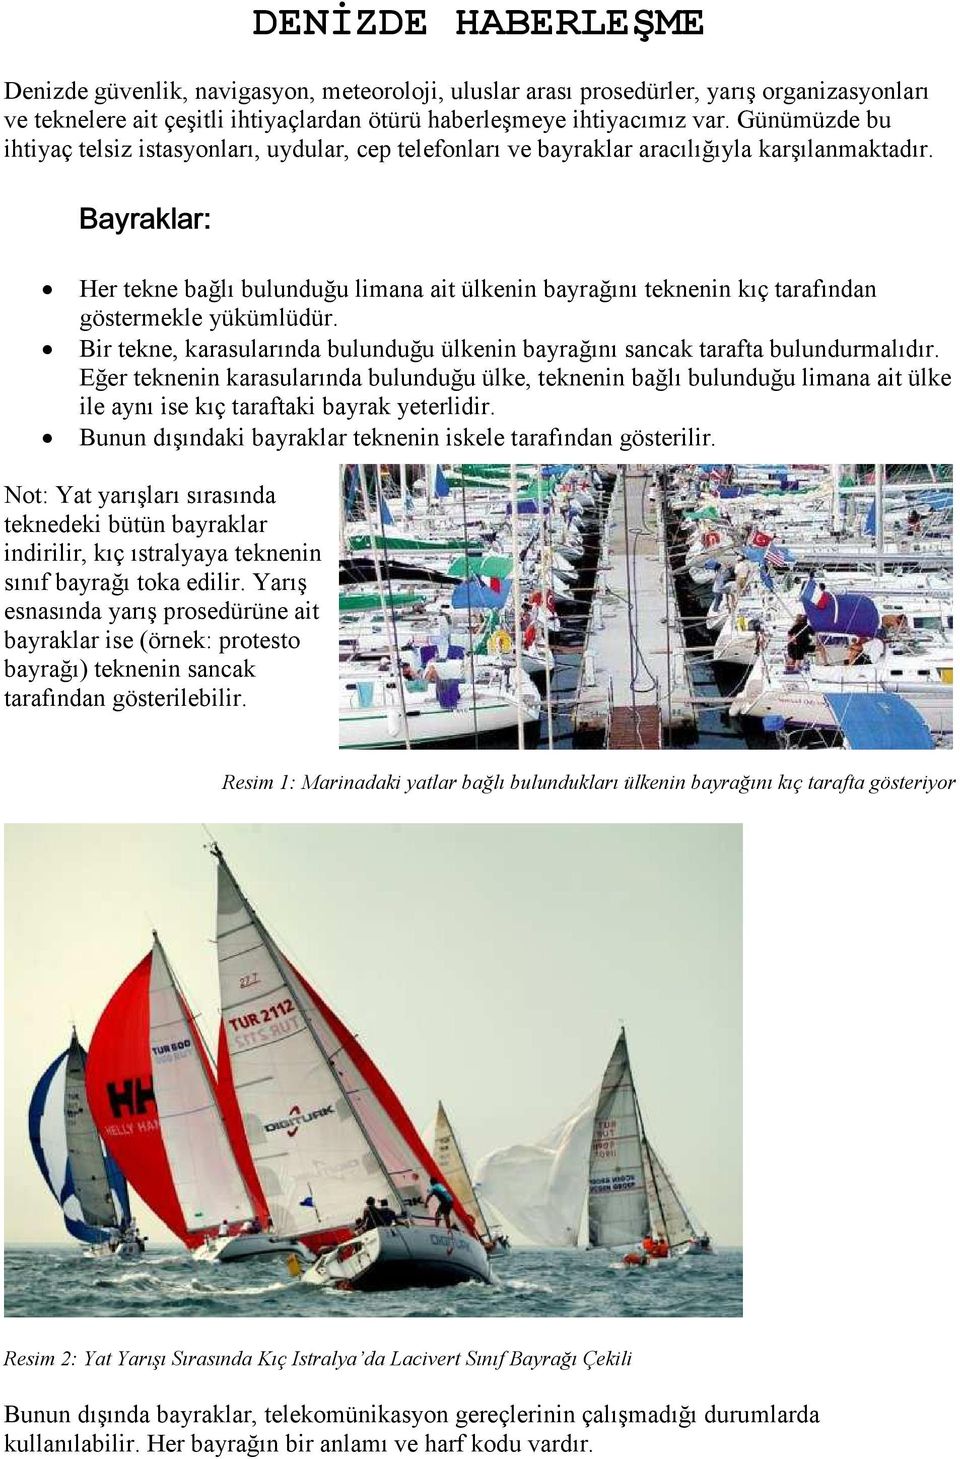 , 7,,7 Her tekne bağlı bulunduğu limana ait ülkenin bayrağını teknenin kıç tarafından göstermekle yükümlüdür. Bir tekne, karasularında bulunduğu ülkenin bayrağını sancak tarafta bulundurmalıdır.